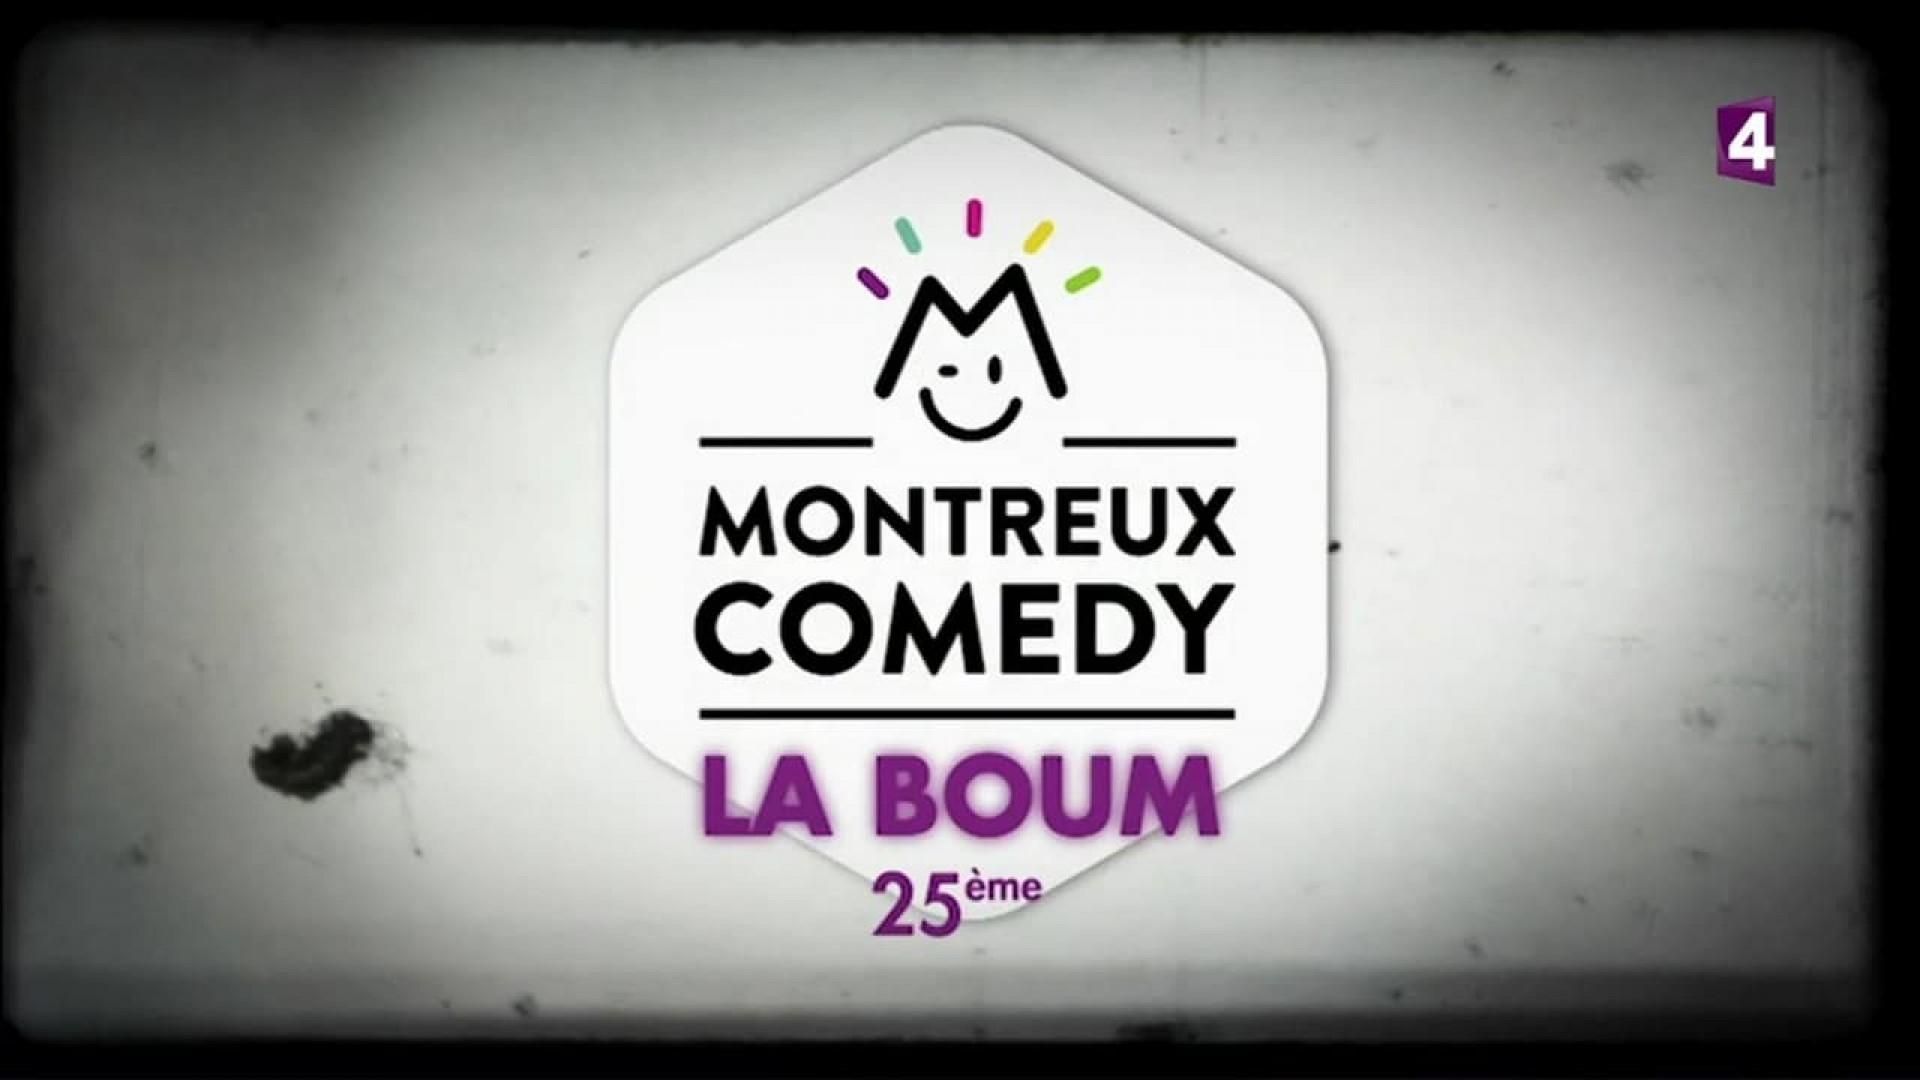 Montreux Comedy Festival - La Boum